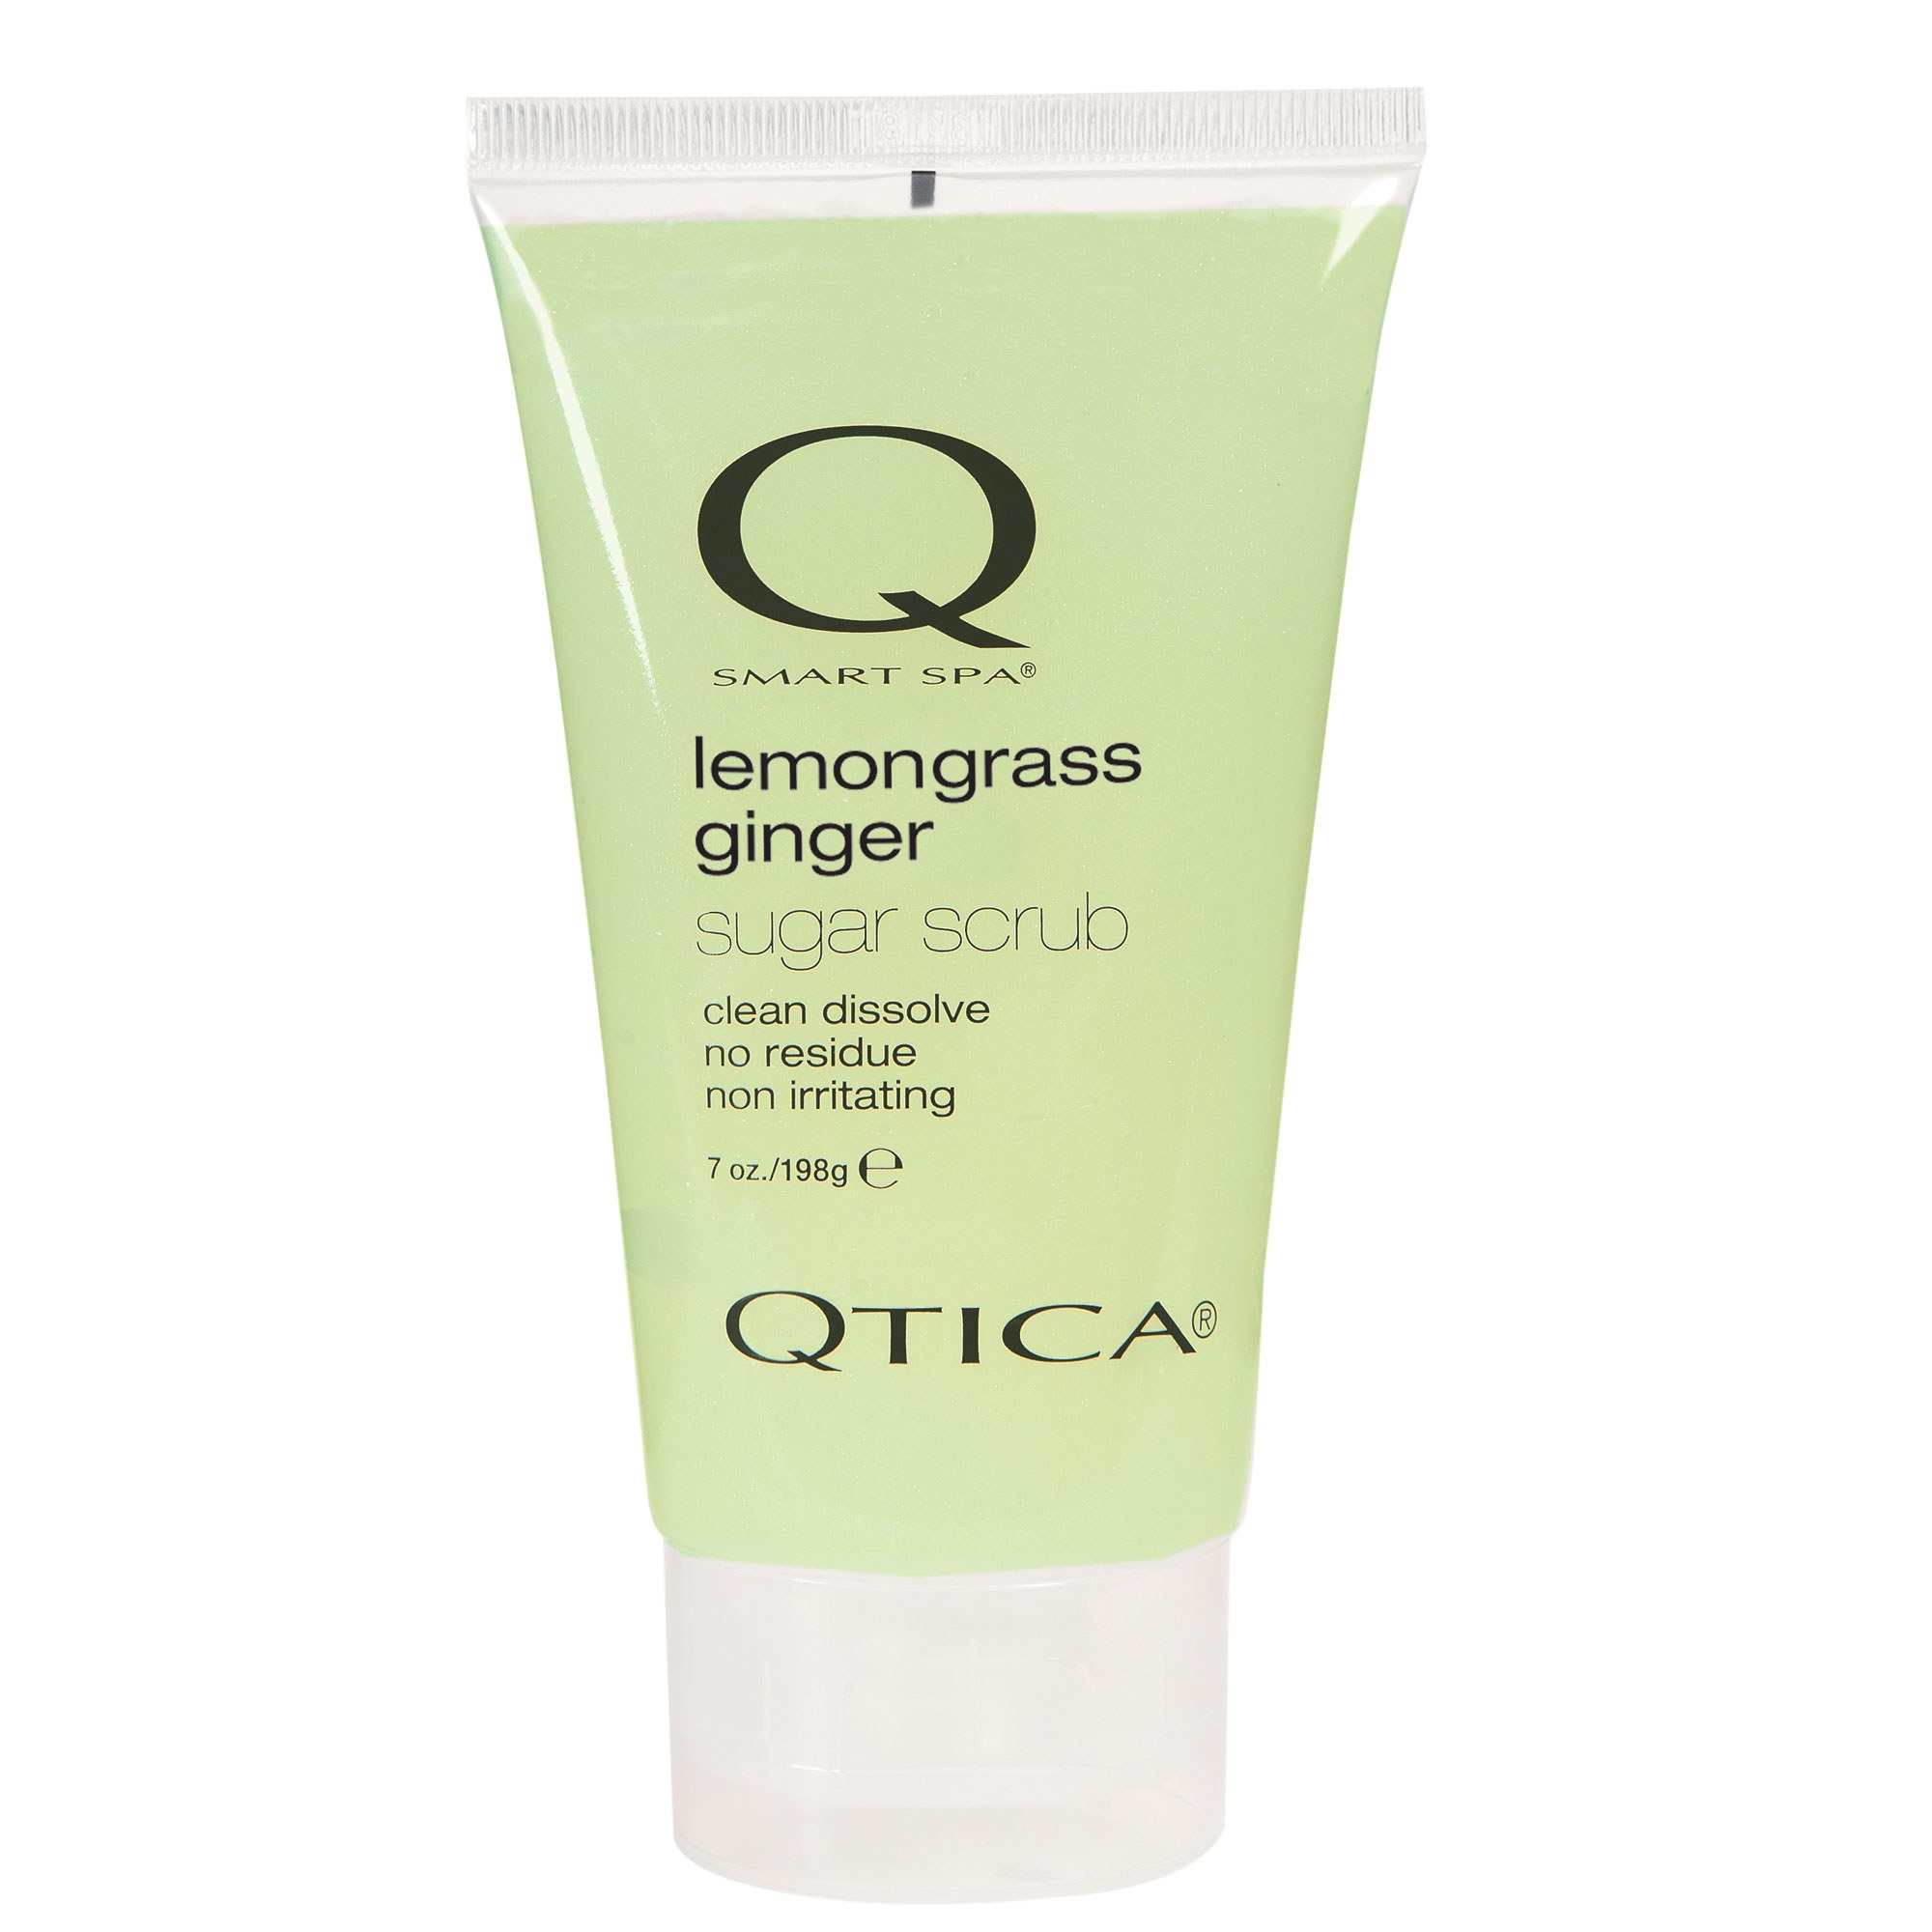 Qtica Smart Spa - Lemongrass Ginger Sugar Scrub